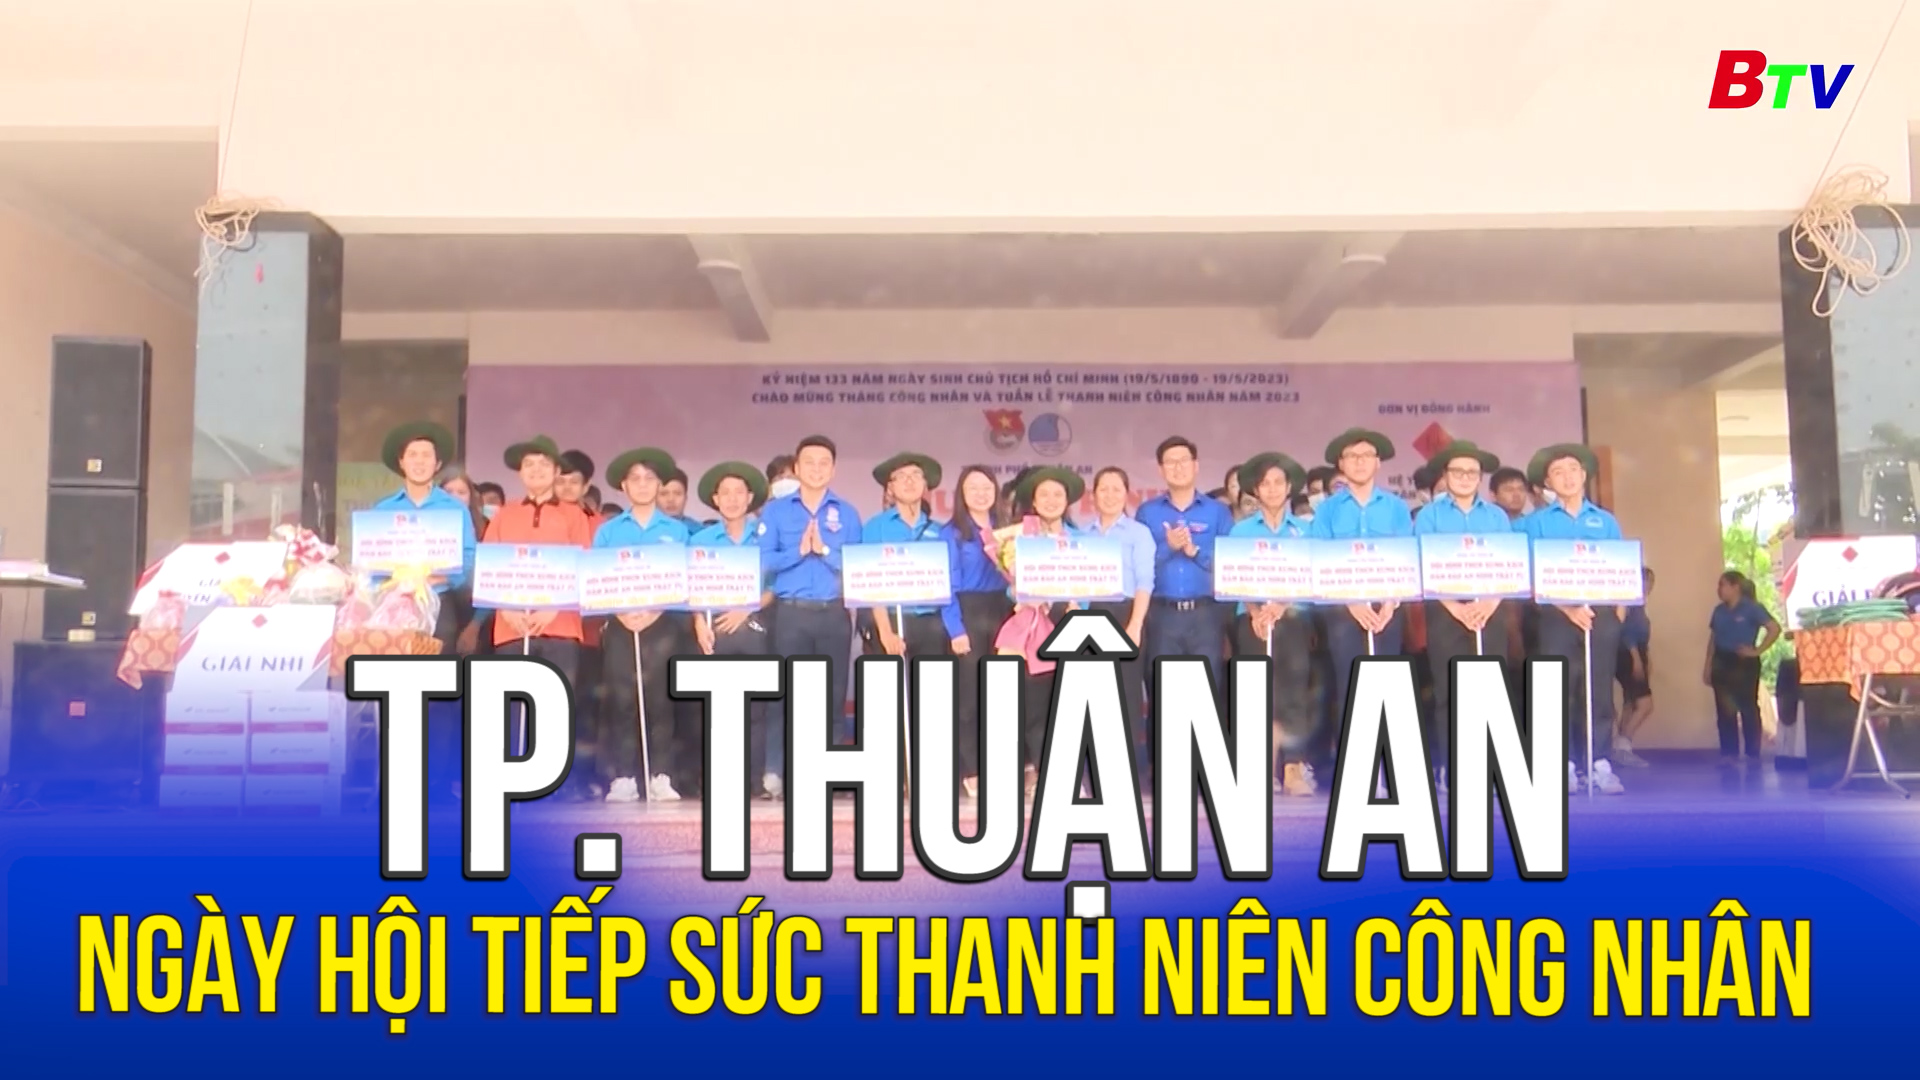 Tp. Thuận An - Ngày hội tiếp sức thanh niên công nhân